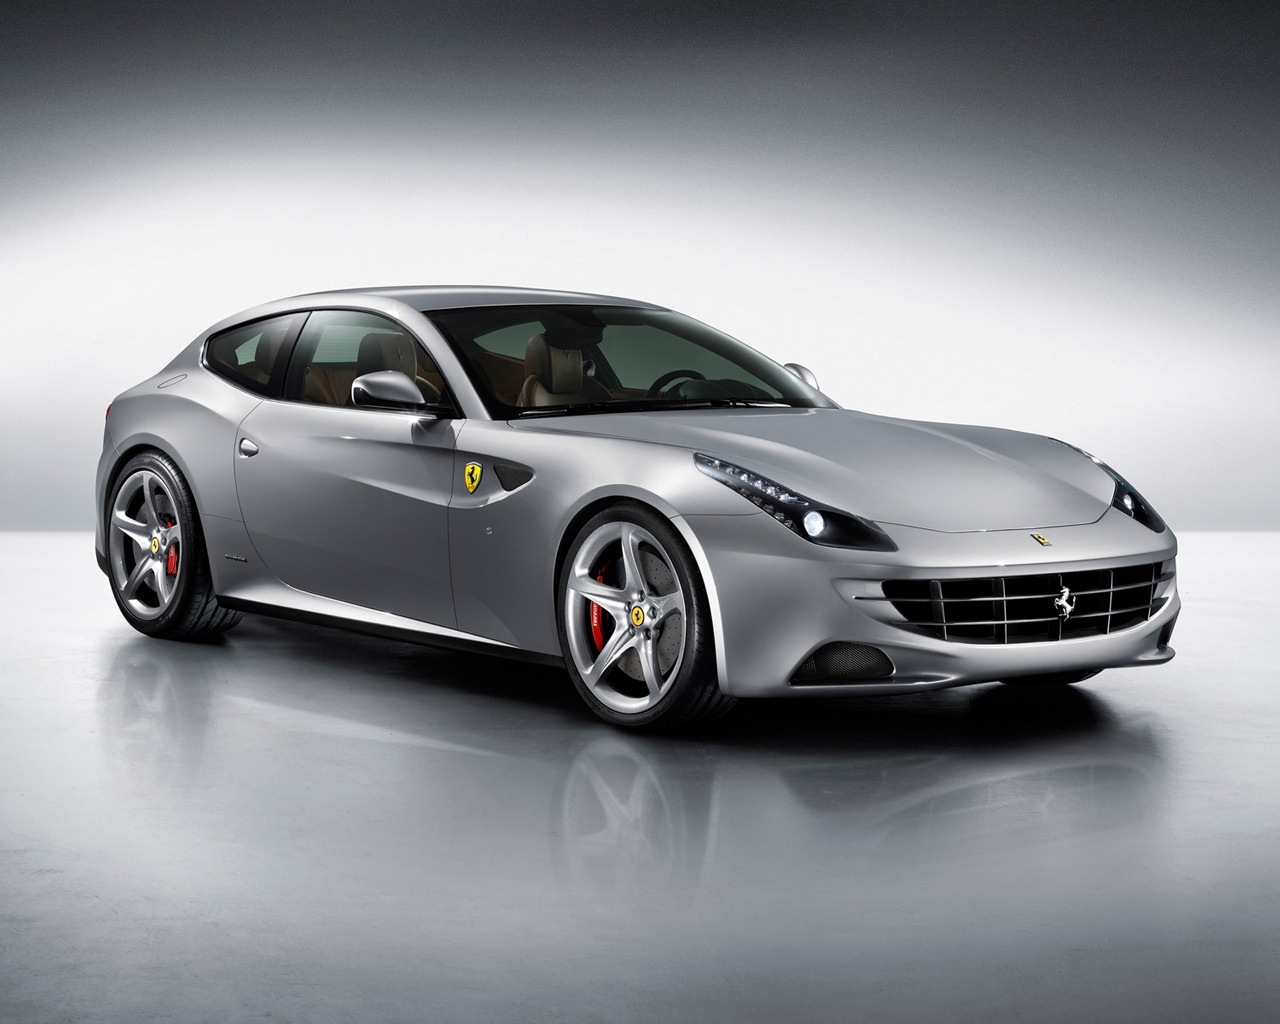 2012 Ferrari FF for 1280 x 1024 resolution